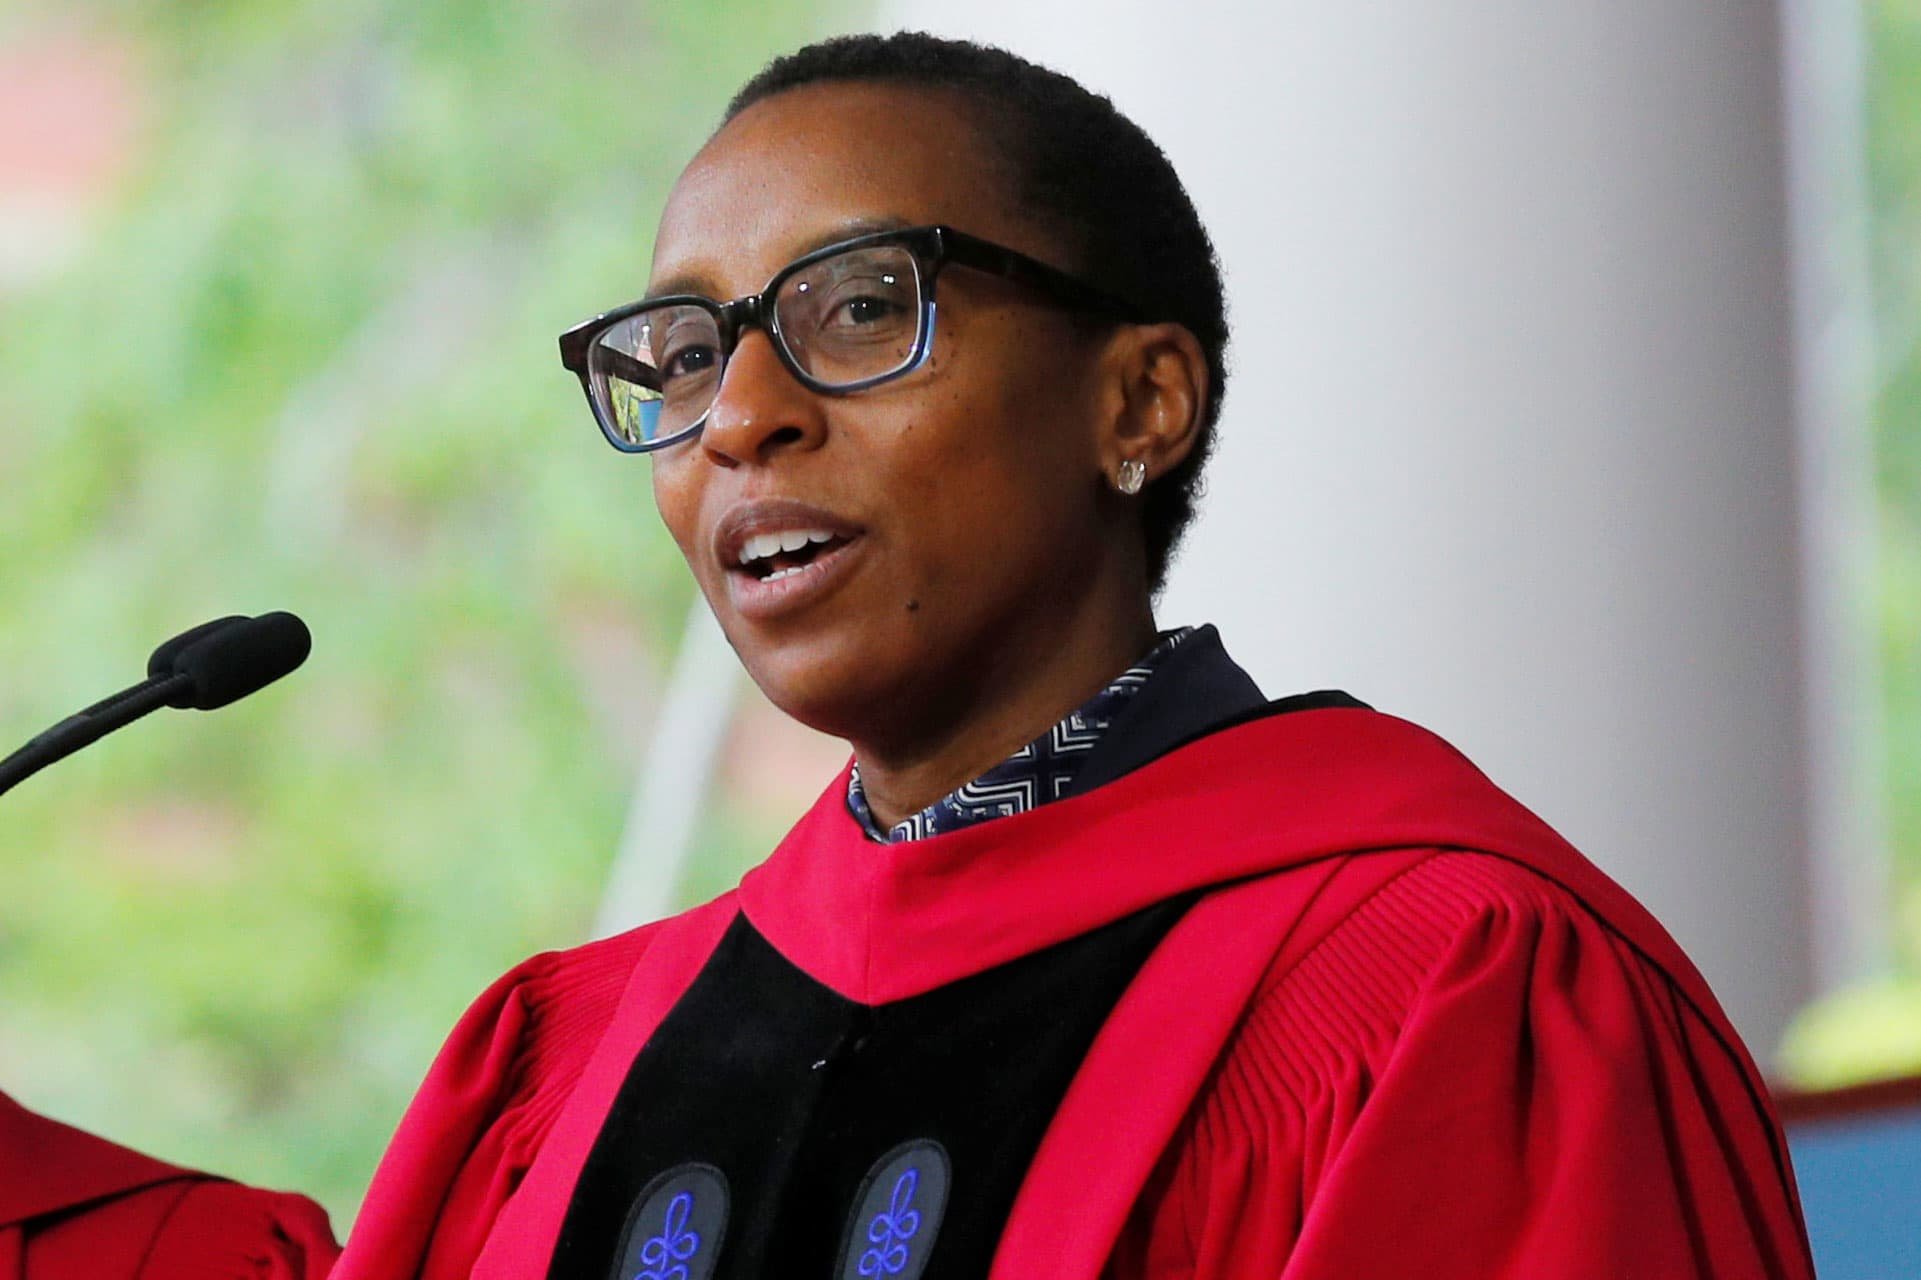  Harvard numește prima persoană de culoare la conducerea prestigioasei institutții